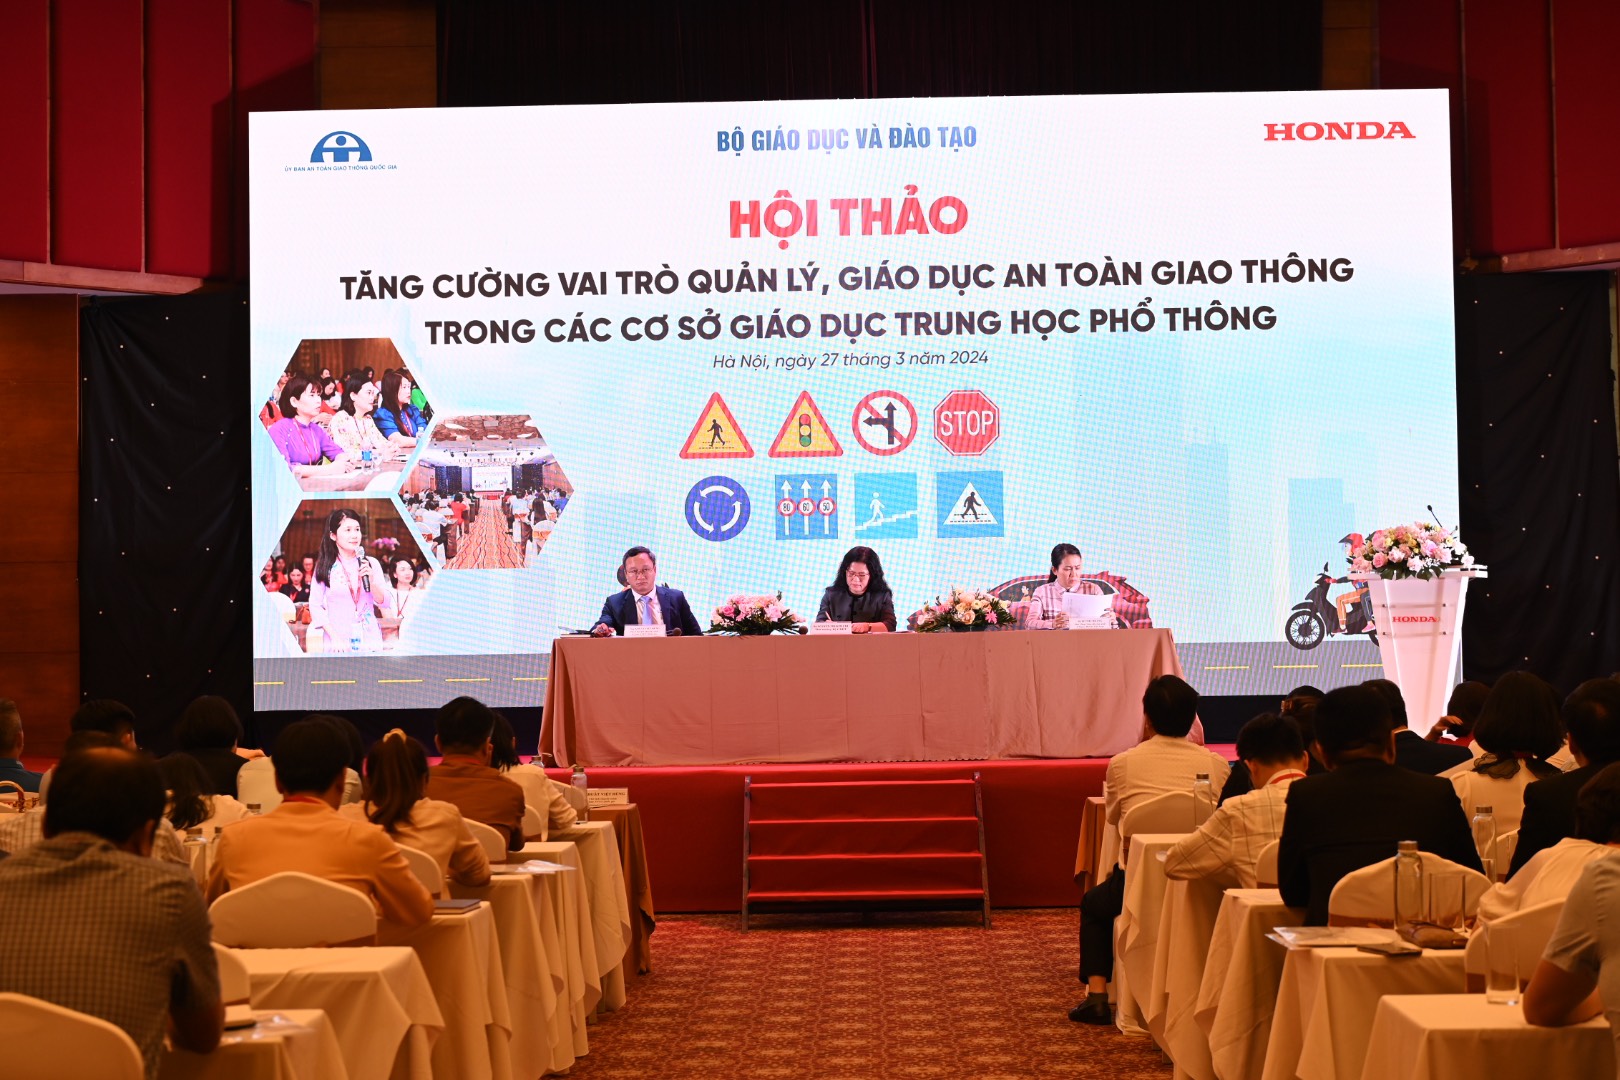 Honda Việt Nam tổ chức Hội thảo tăng cường vai trò quản lý, giáo dục ATGT trong các cơ sở giáo dục THPT ban-dieu-hanh-chu-tri-hoi-thao.jpg